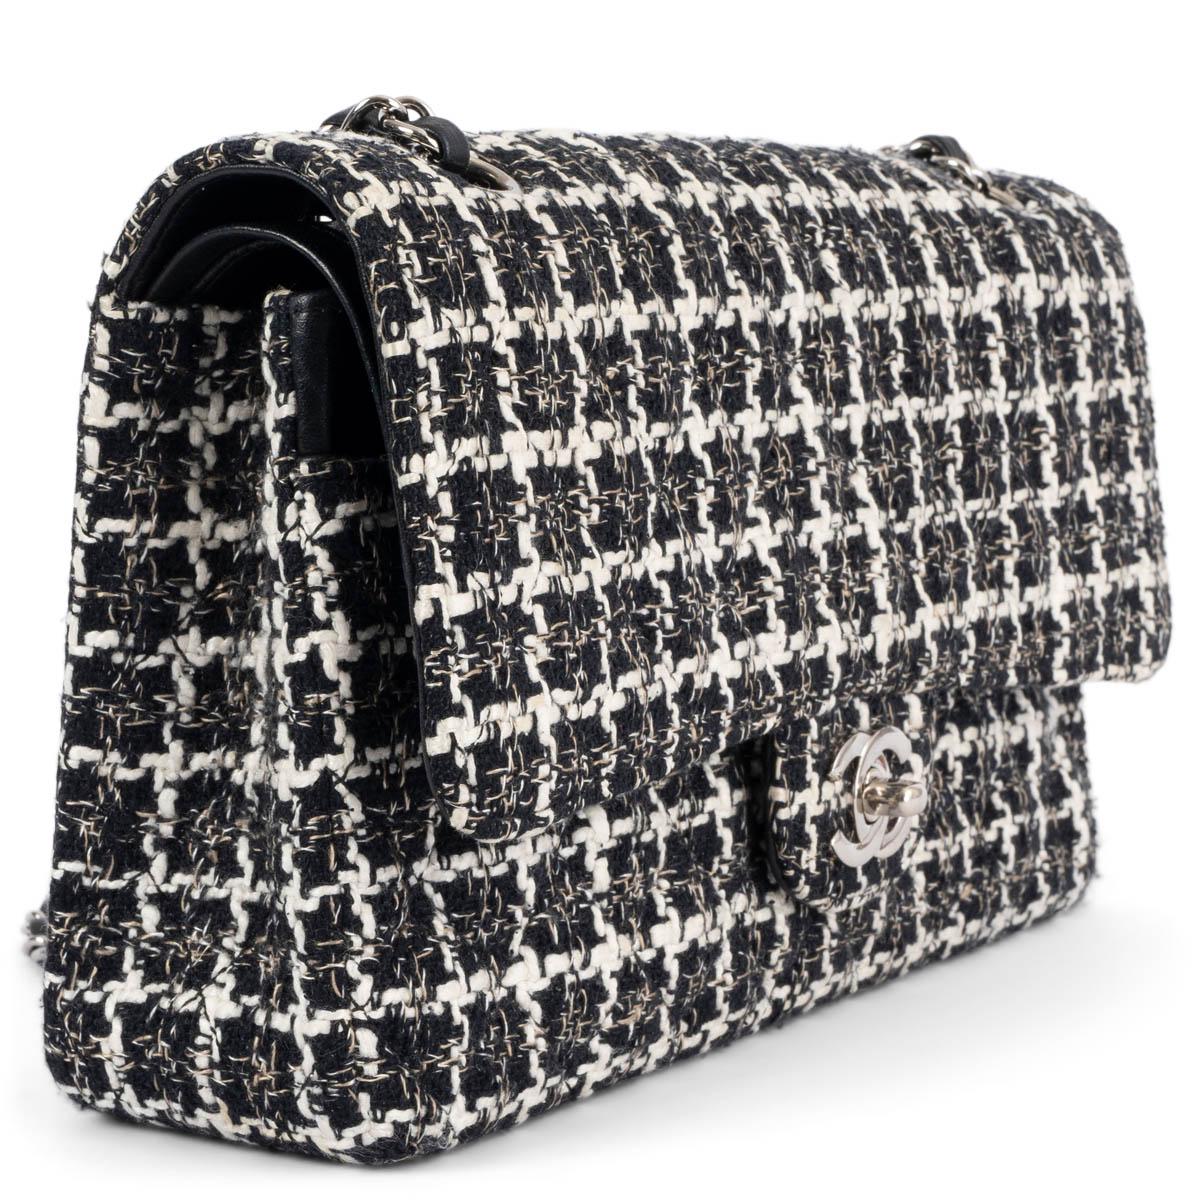 100% authentique Chanel Classic Medium Timeless Double Flap Bag en tweed noir, ivoire et beige avec quincaillerie argentée. Poche ouverte au dos. Fermeture avec le classique CC-turn-lock sur le devant. Poche zippée à l'intérieur du rabat. Poche